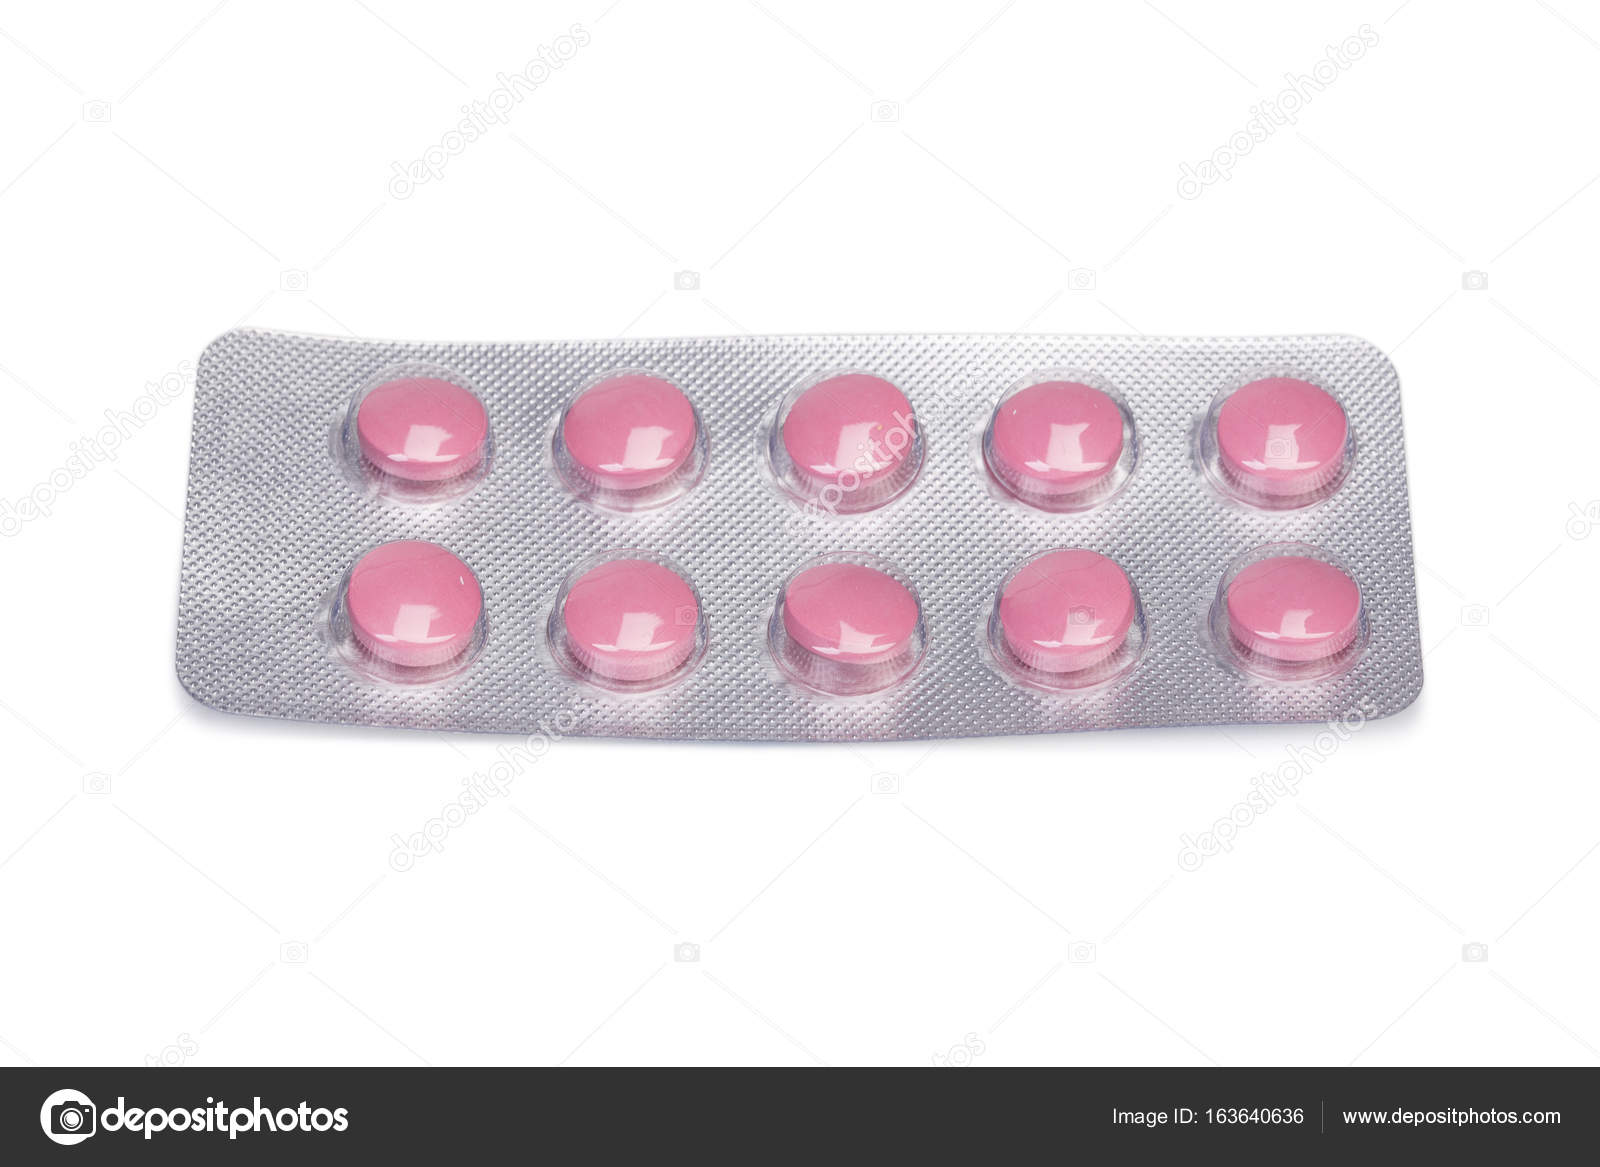 Розовые таблетки от температуры. Аспирин Bayer розовая таблетка. Розовые круглые таблетки. Маленькие розовые таблетки. Розовые таблетки обезболивающие.